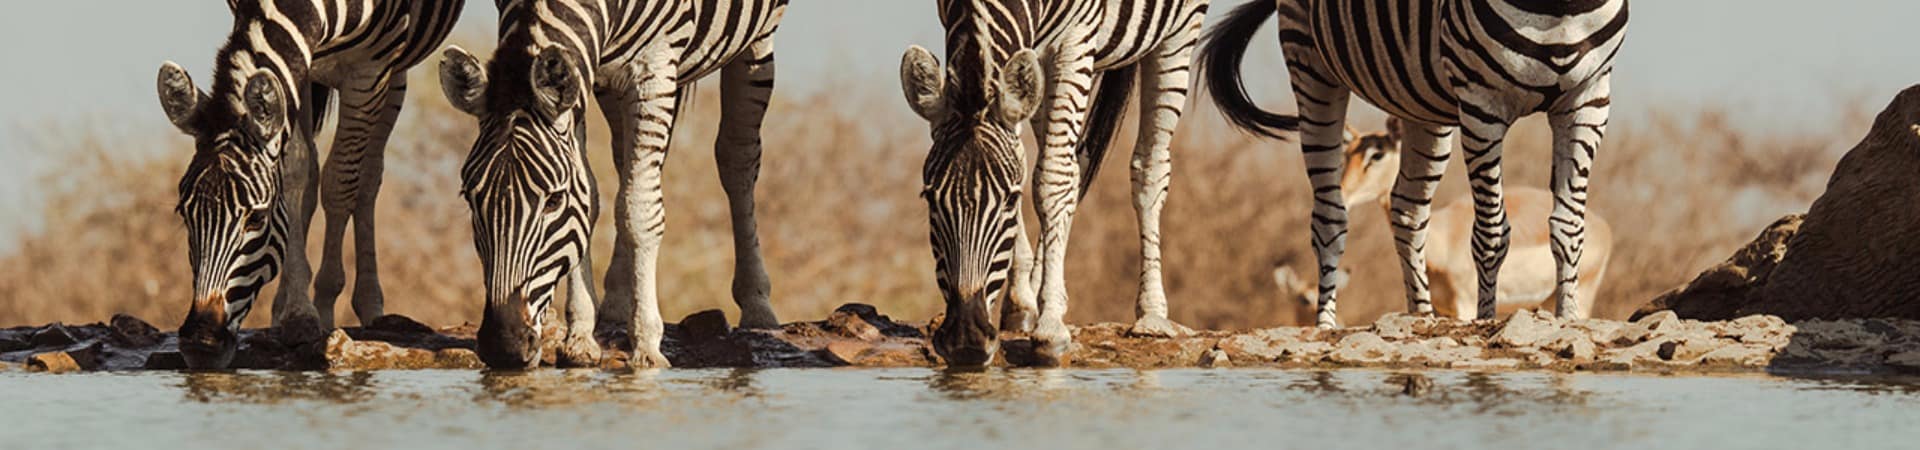 Last word madikwe observacao zebras